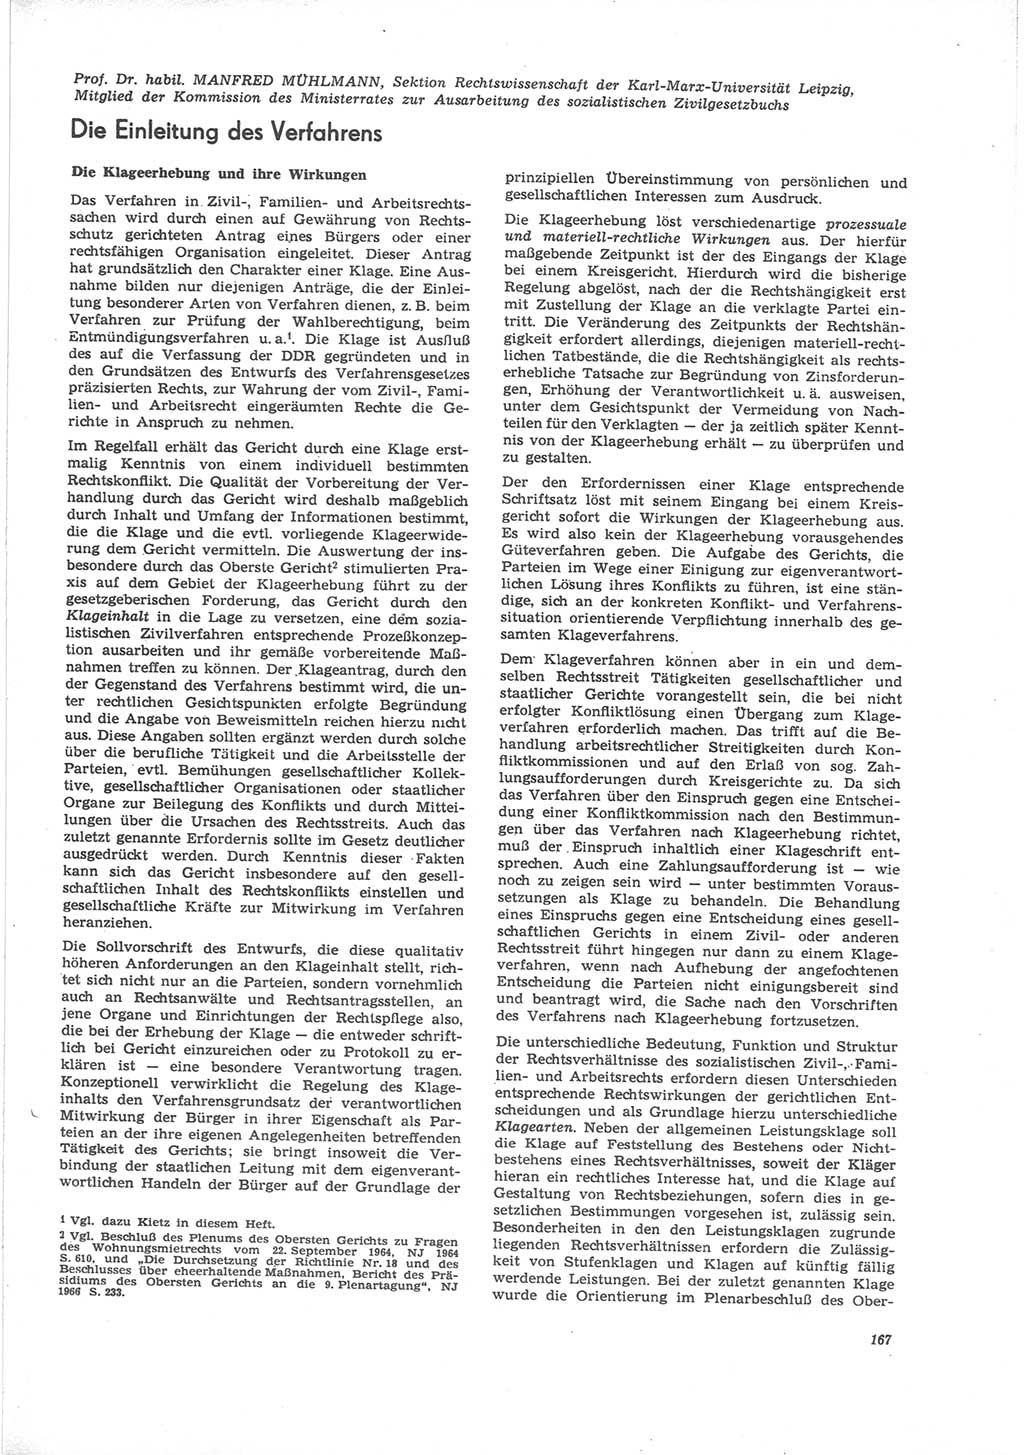 Neue Justiz (NJ), Zeitschrift für Recht und Rechtswissenschaft [Deutsche Demokratische Republik (DDR)], 24. Jahrgang 1970, Seite 167 (NJ DDR 1970, S. 167)